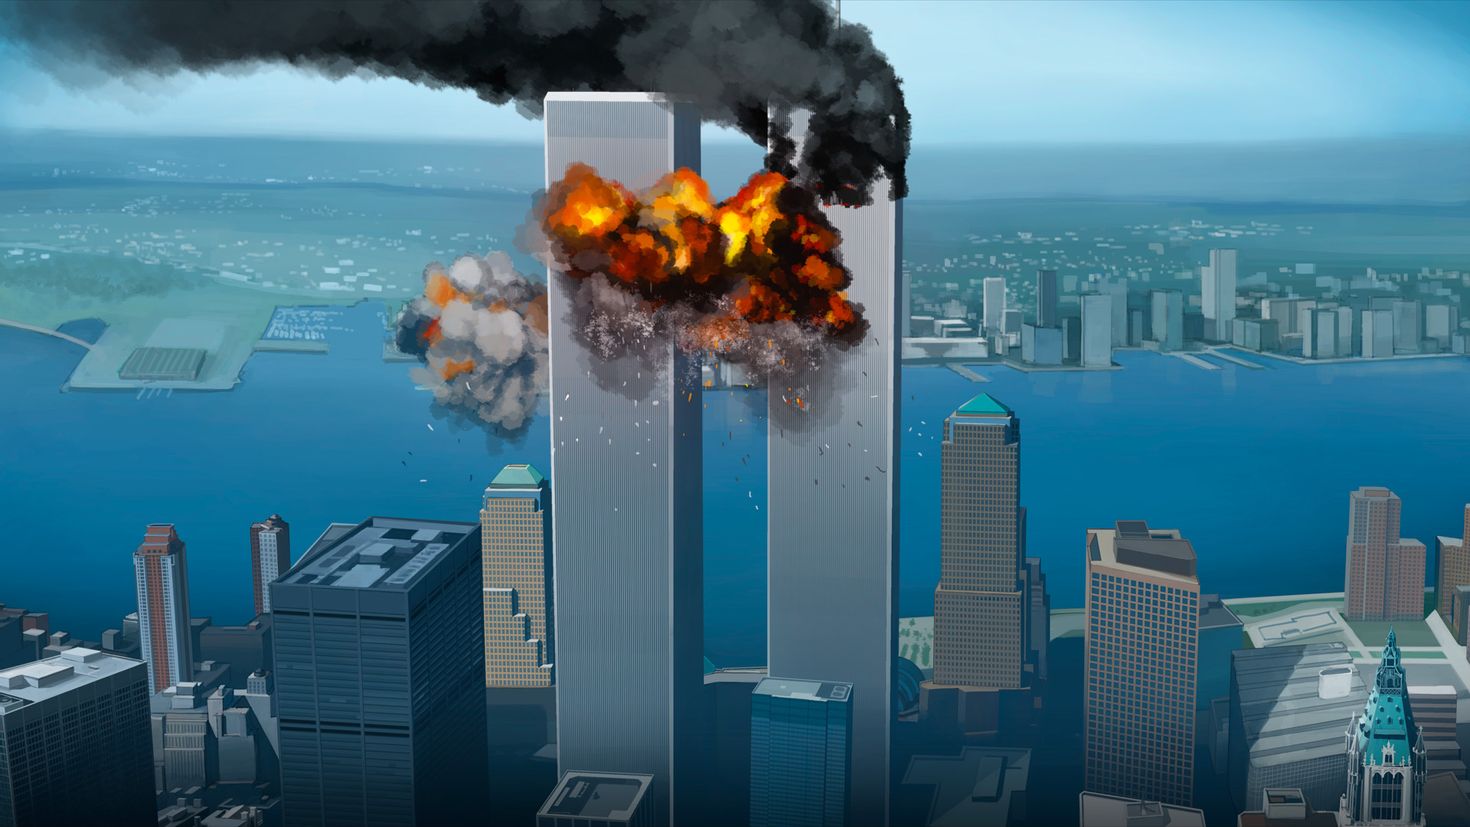 Небоскреб 11. Башни-Близнецы 11 сентября 2001. Всемирный торговый центр в Нью-Йорке башни Близнецы. 2 Башни Близнецы 11 сентября.